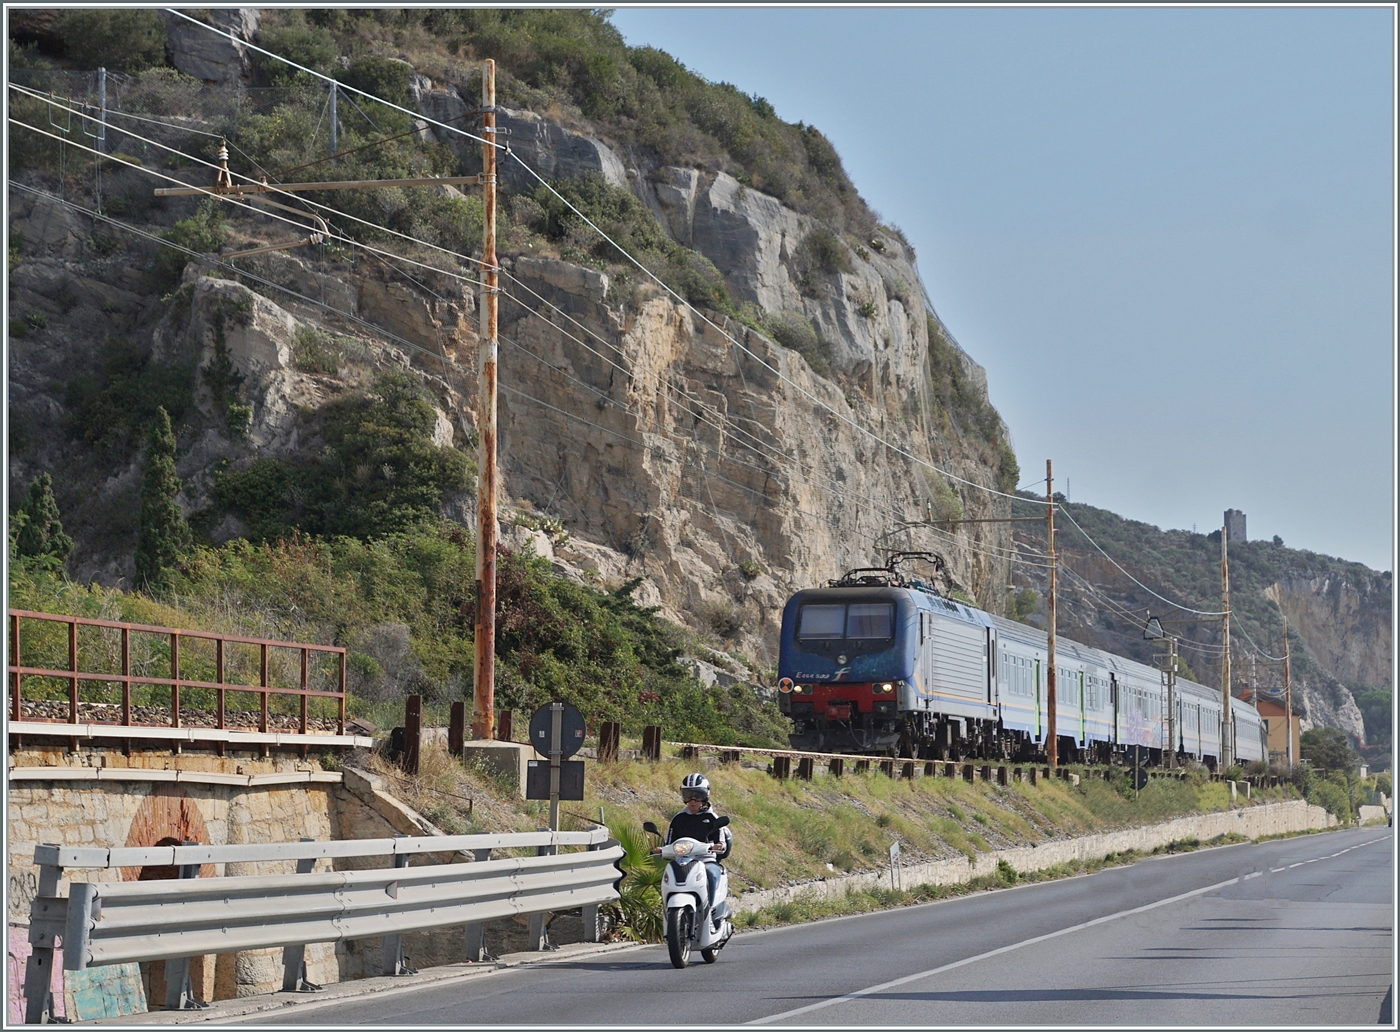 Typisch Italien, Bahn und Strasse teilen sich den engen Raum zwischen den aufragenden Bergen und dem Mittelmeer. Das Bild entstand bei Finale Ligure, und  gerade auf dem Streckenabschnitt an der Riviera dei Fiori verschwanden betrchtliche Streckenabschnitte in Tunnel, so dass das die typische Italienische Bahnambiente schon fast die Ausnahme darstellt. 

Die FS Trenitalia E 464 509 ist mit einem Regionalzug auf dem Weg nach Ventimiglia. 

22. Sept. 2022